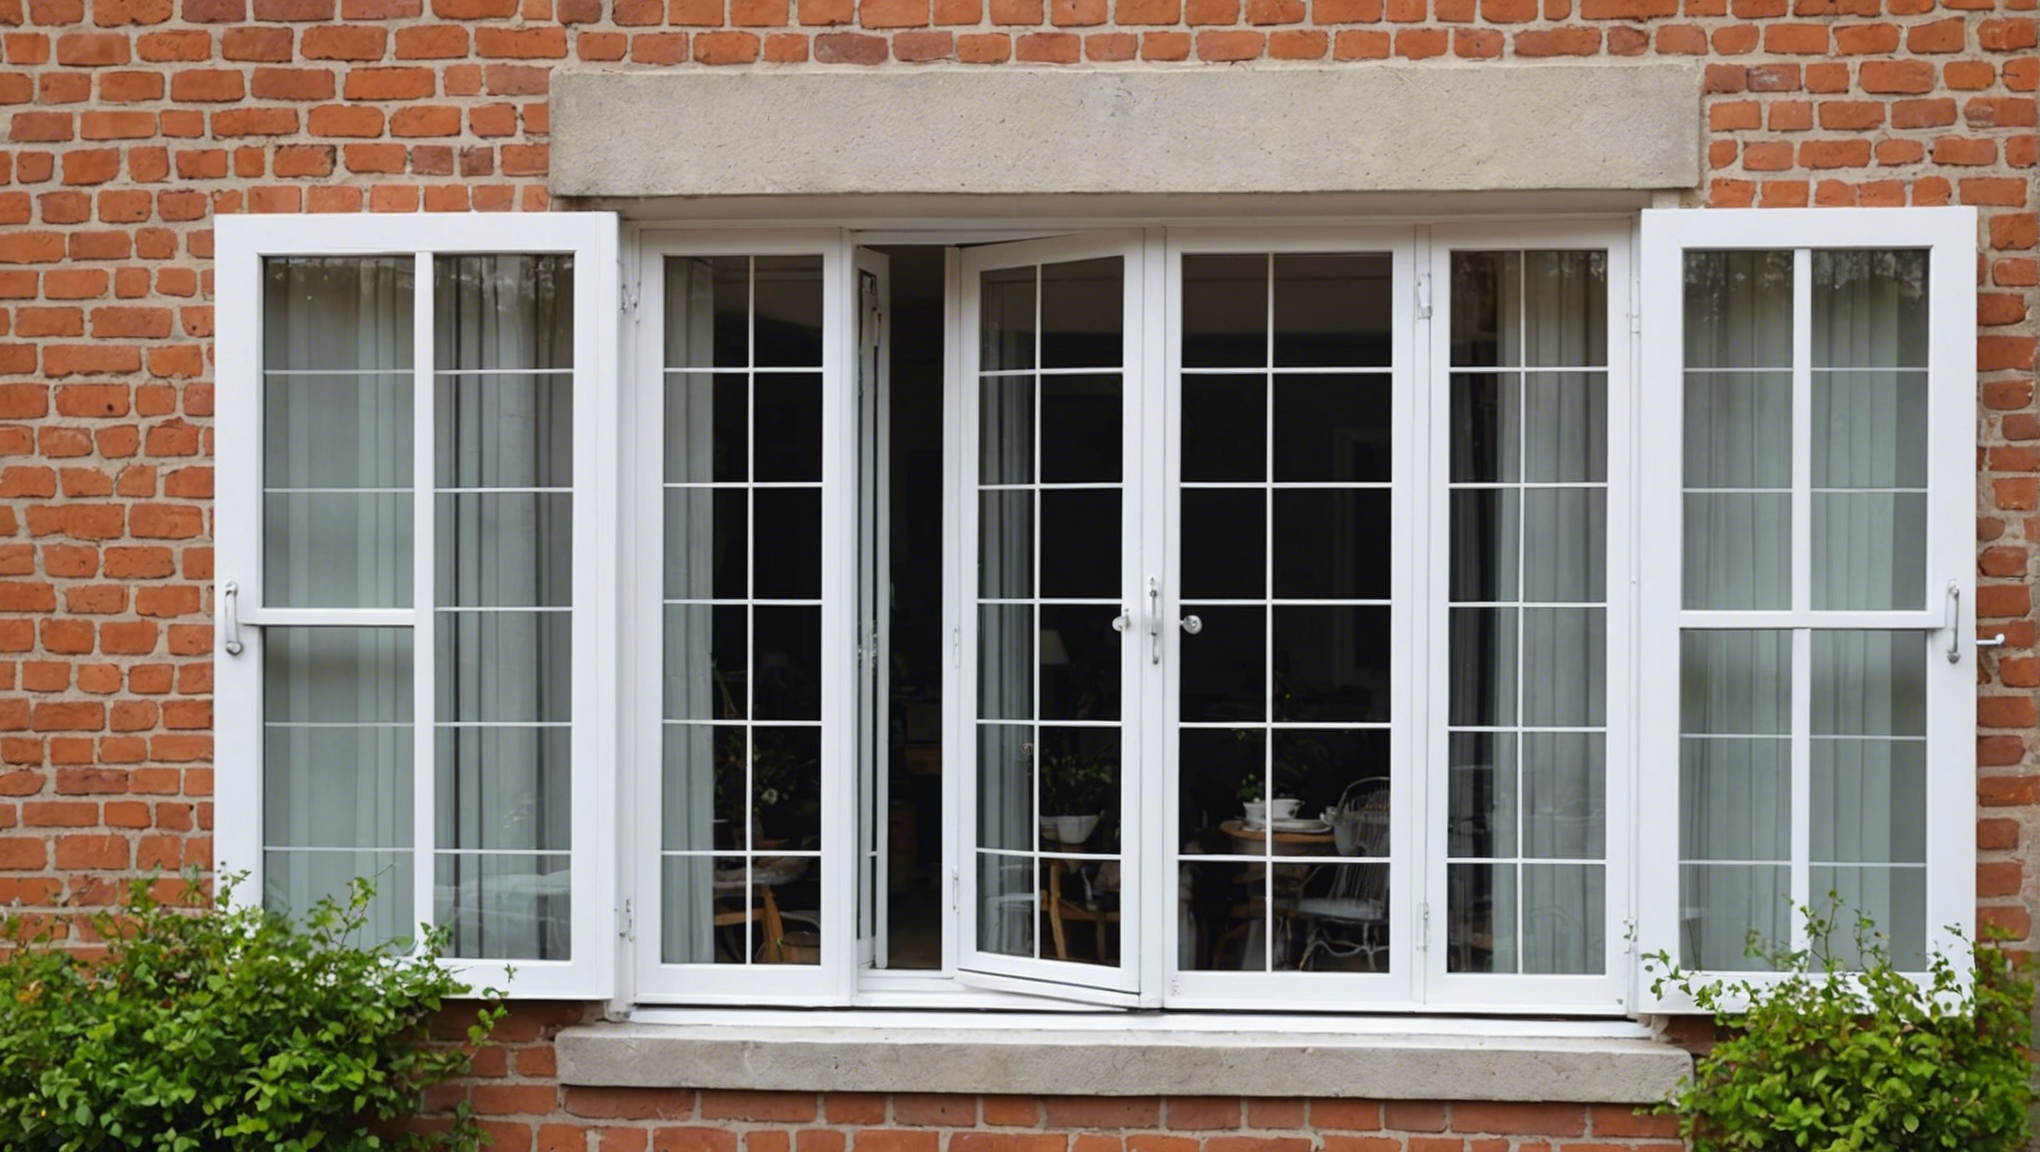 découvrez les avantages des fenêtres oscillo-battantes pour votre maison et comment elles peuvent améliorer votre confort quotidien.